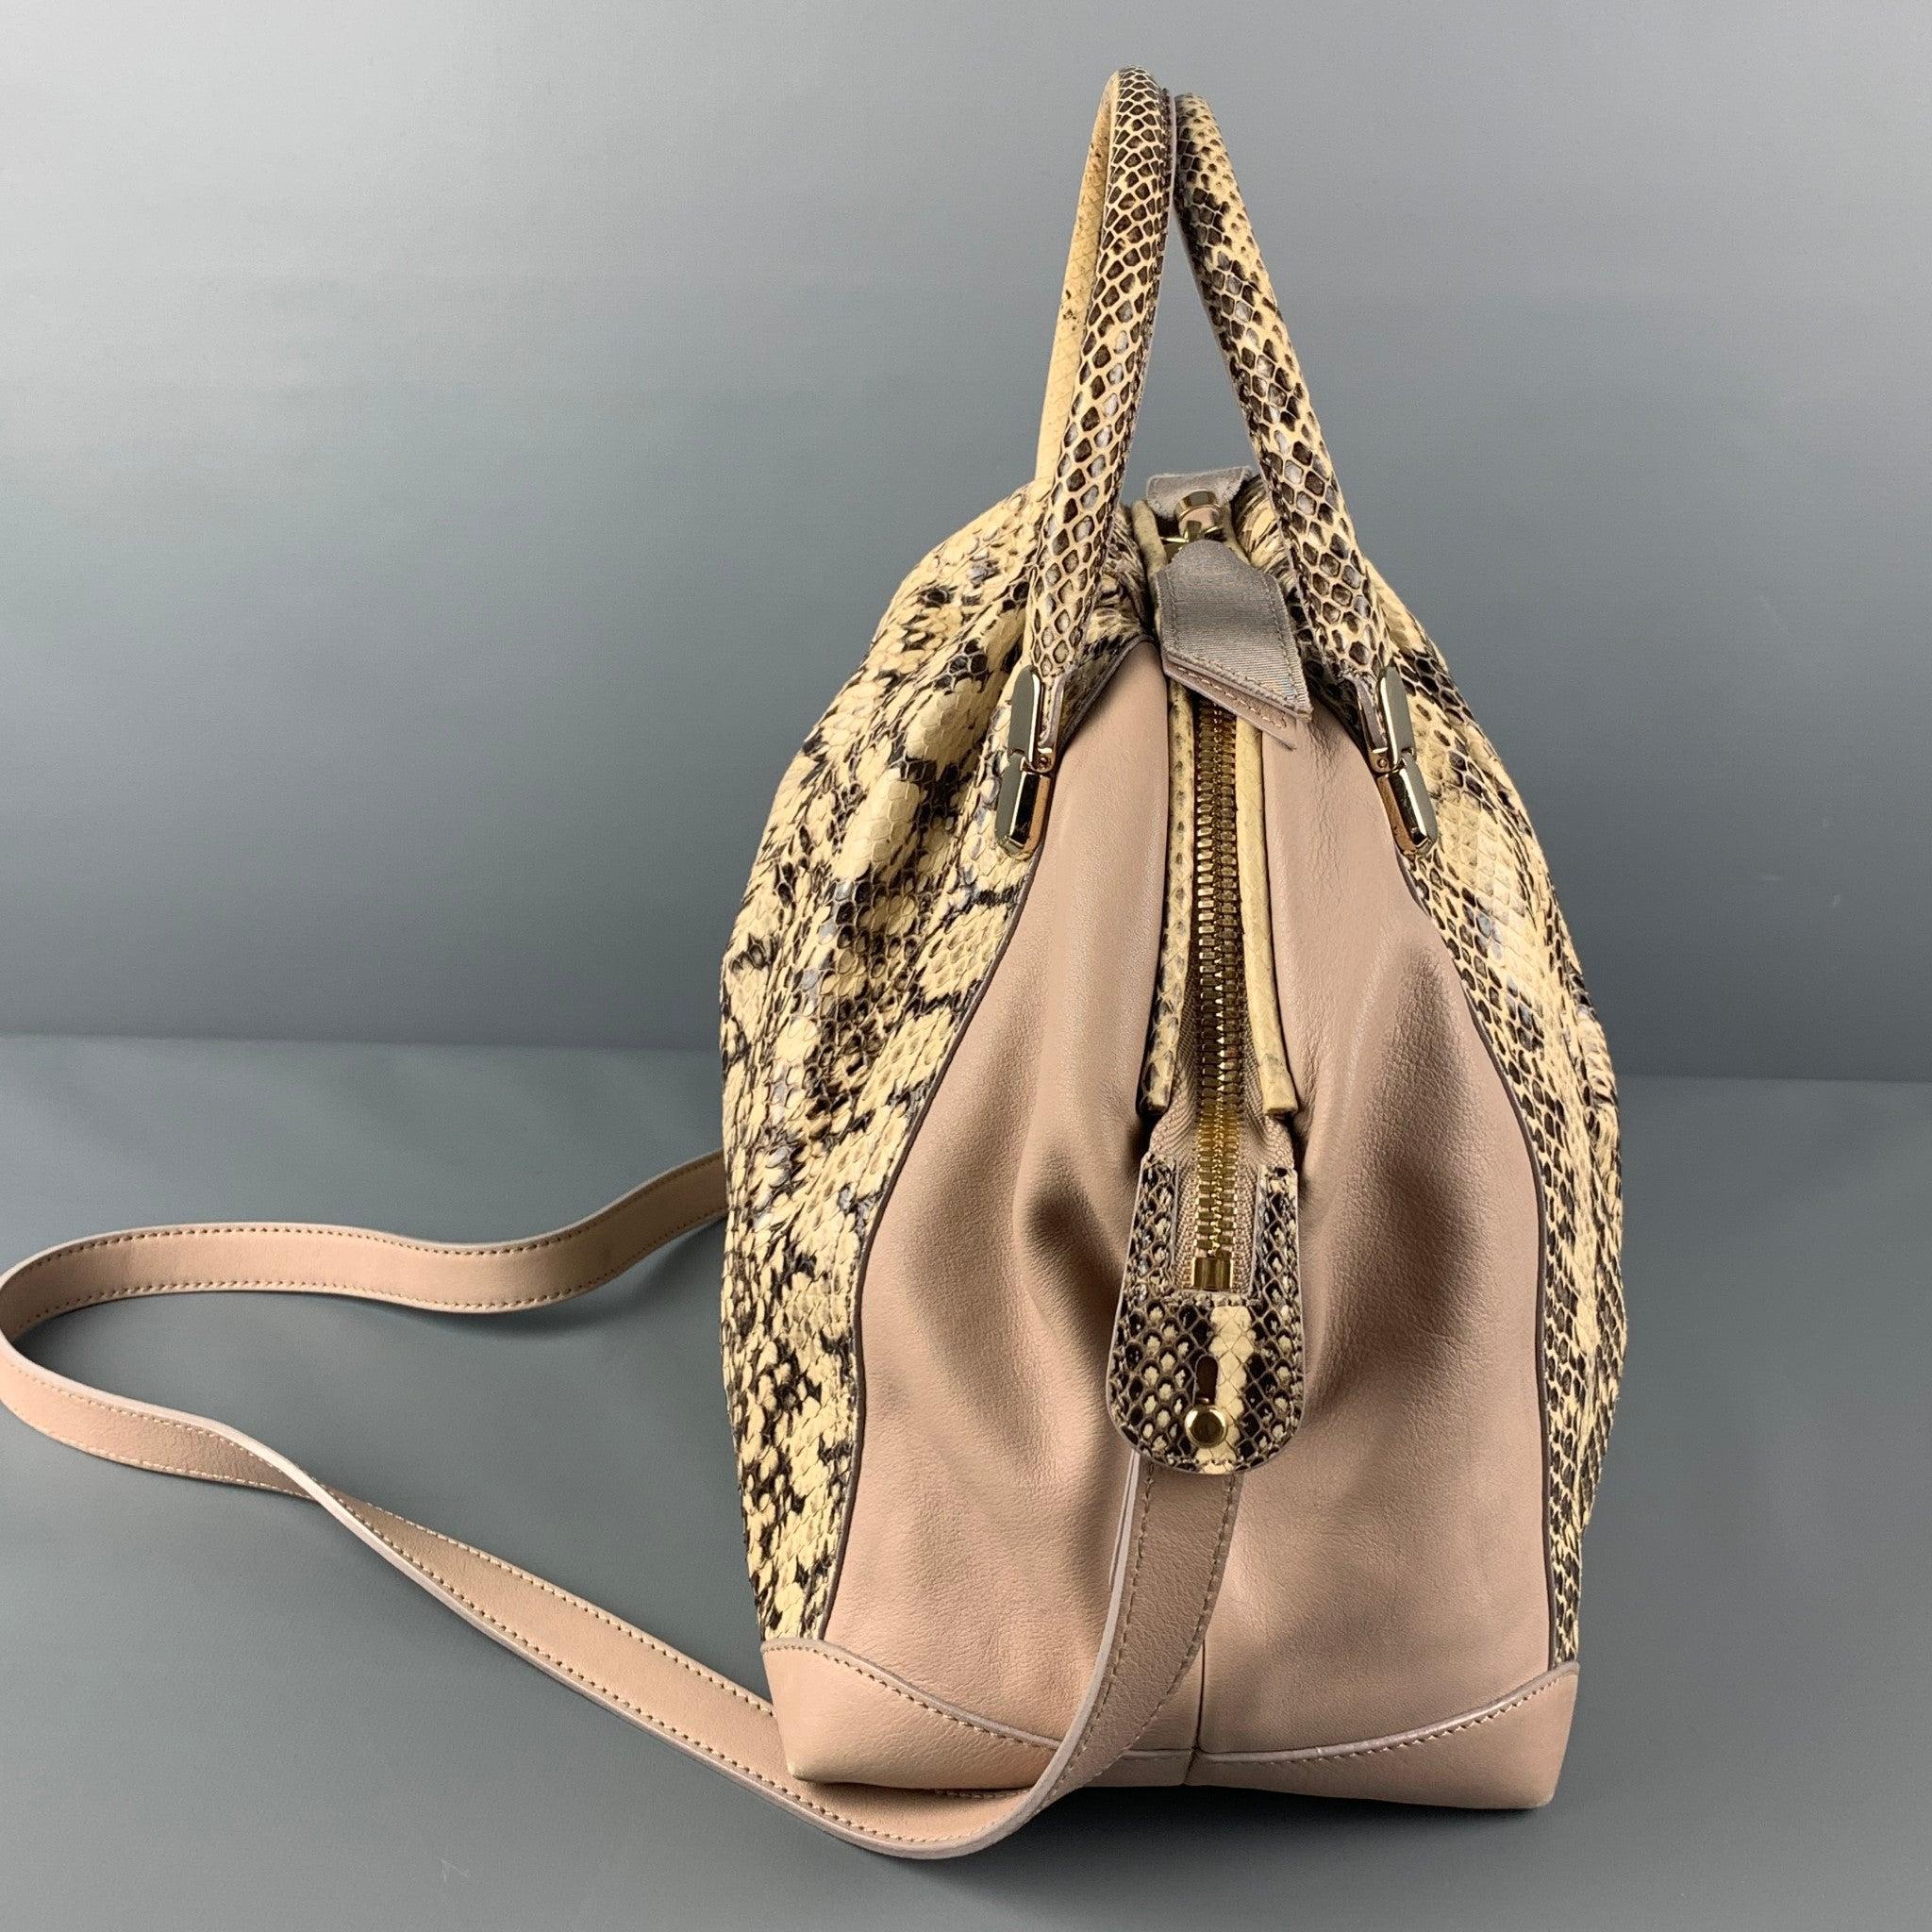 Die Tasche von NINA RICCI ist aus einem beige-braunen Ledermix gefertigt und verfügt über Tragegriffe, abnehmbare Schulterriemen, goldfarbene Beschläge, ein Innenfach und einen Reißverschluss. Hergestellt in Italien.
Sehr gut
Gebrauchtes Zustand.